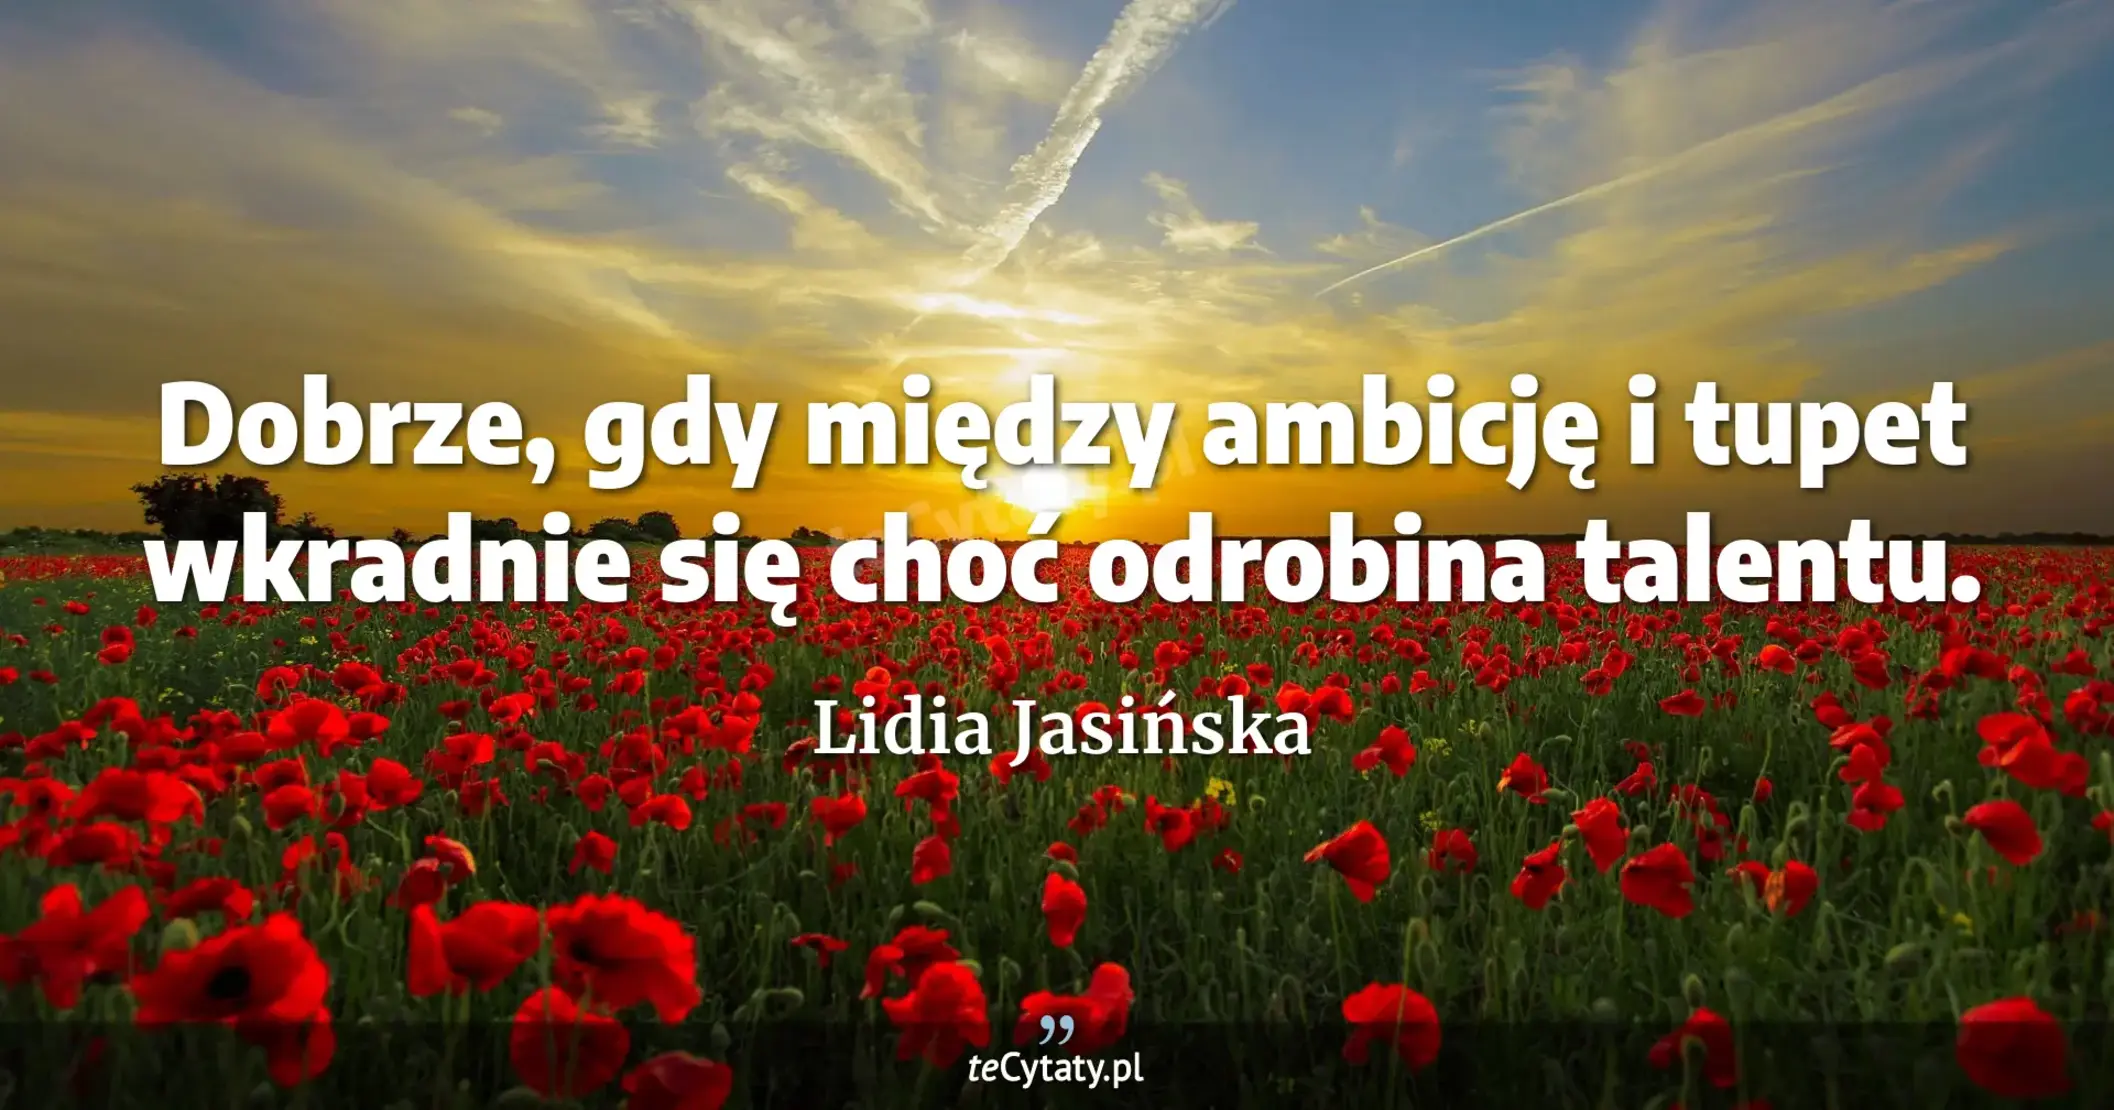 Dobrze, gdy między ambicję i tupet wkradnie się choć odrobina talentu. - Lidia Jasińska